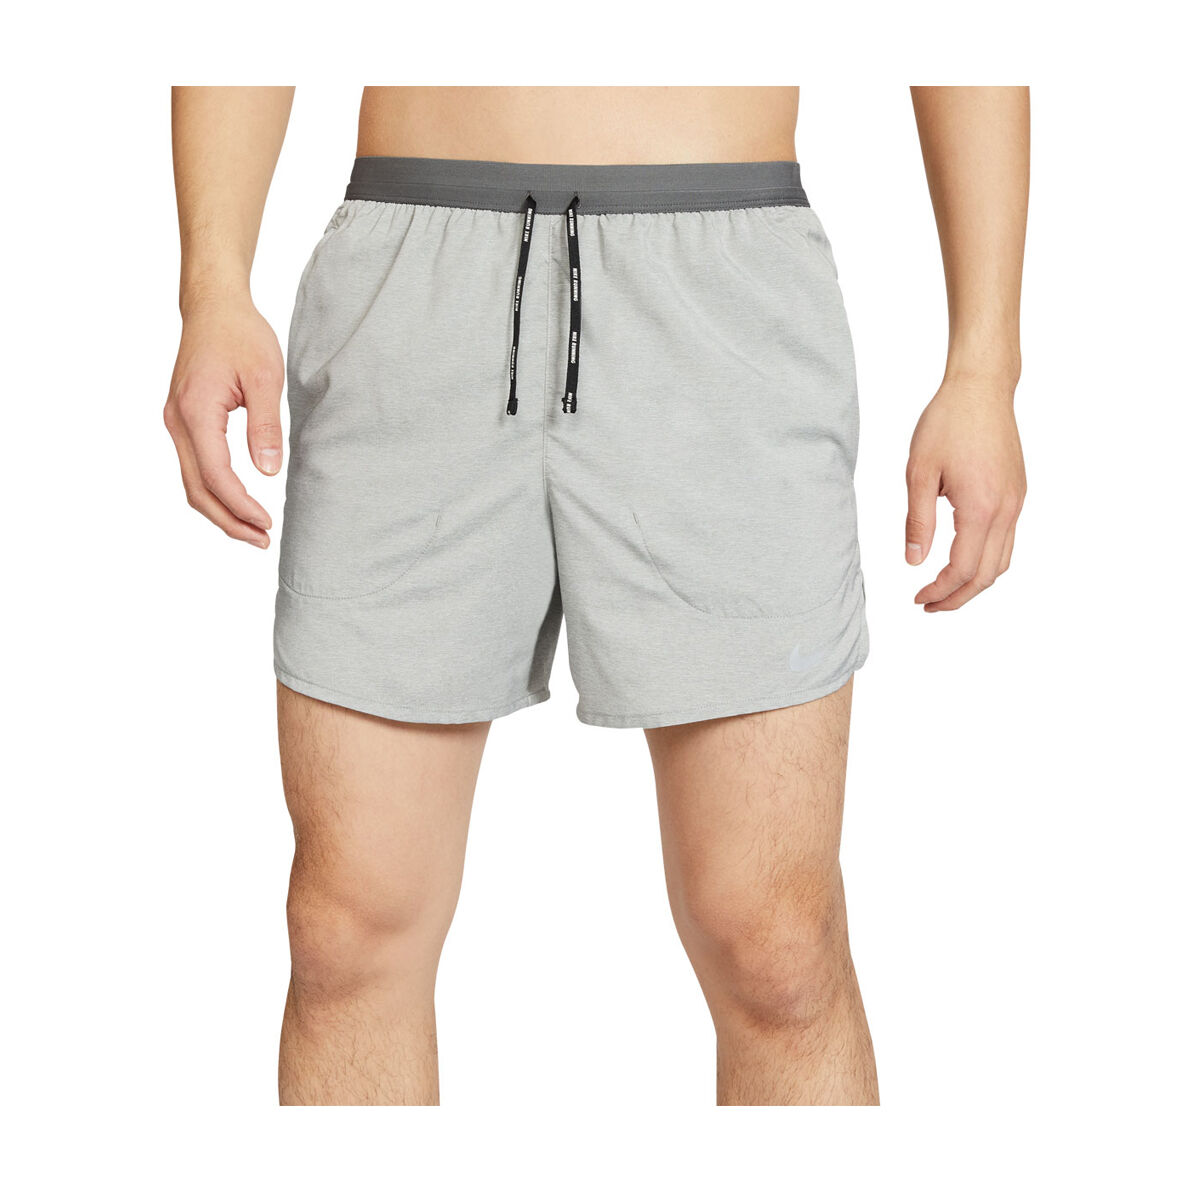 5 inch nike running shorts